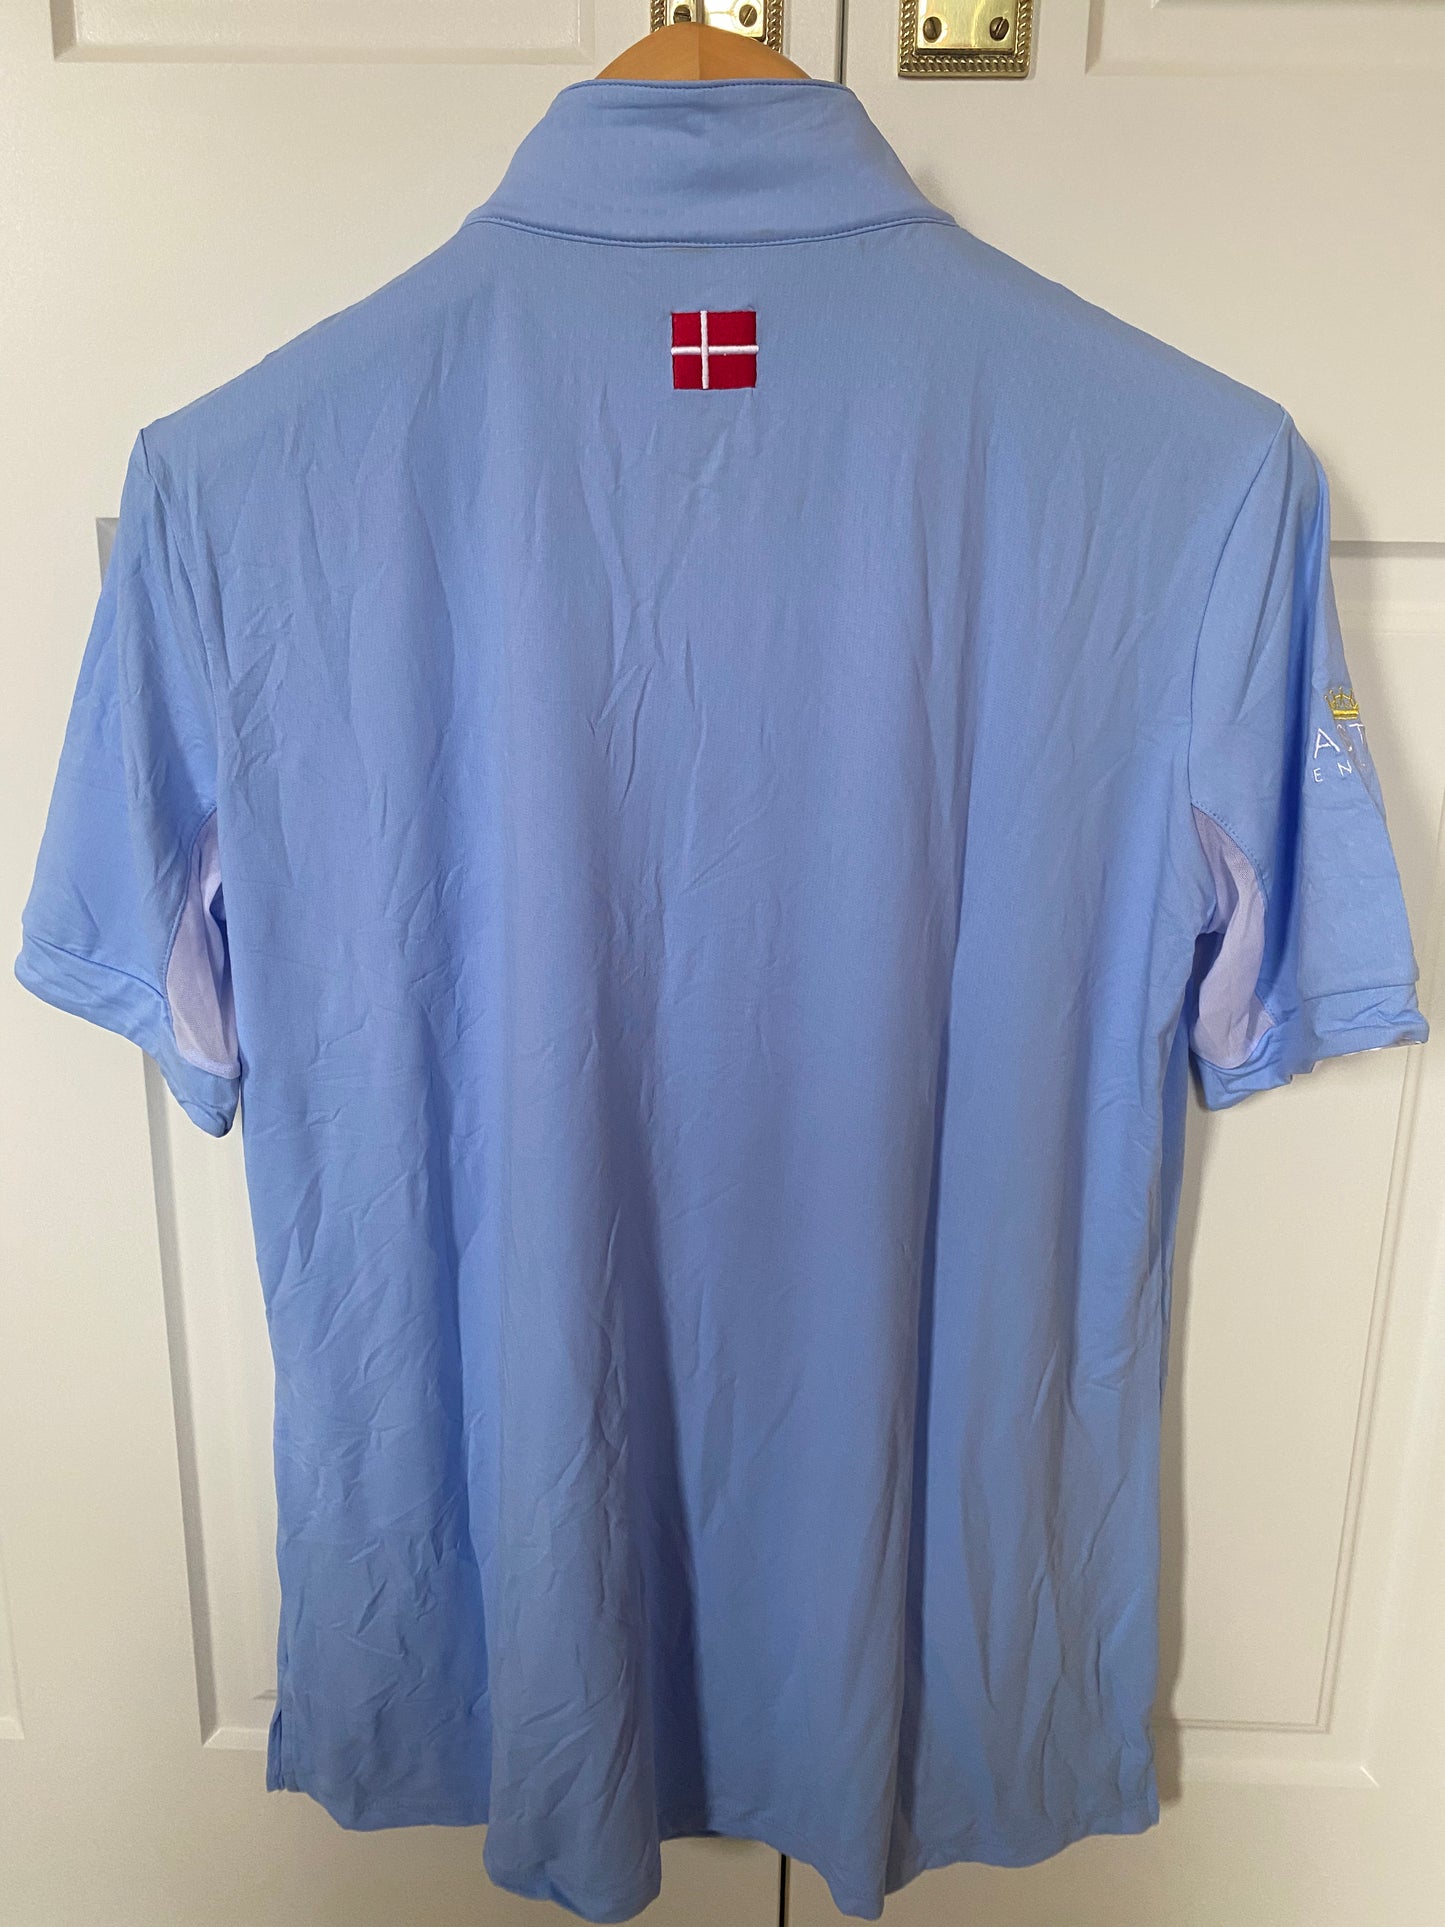 Kastel Denmark Short Sleeve Light Blue with White Trim